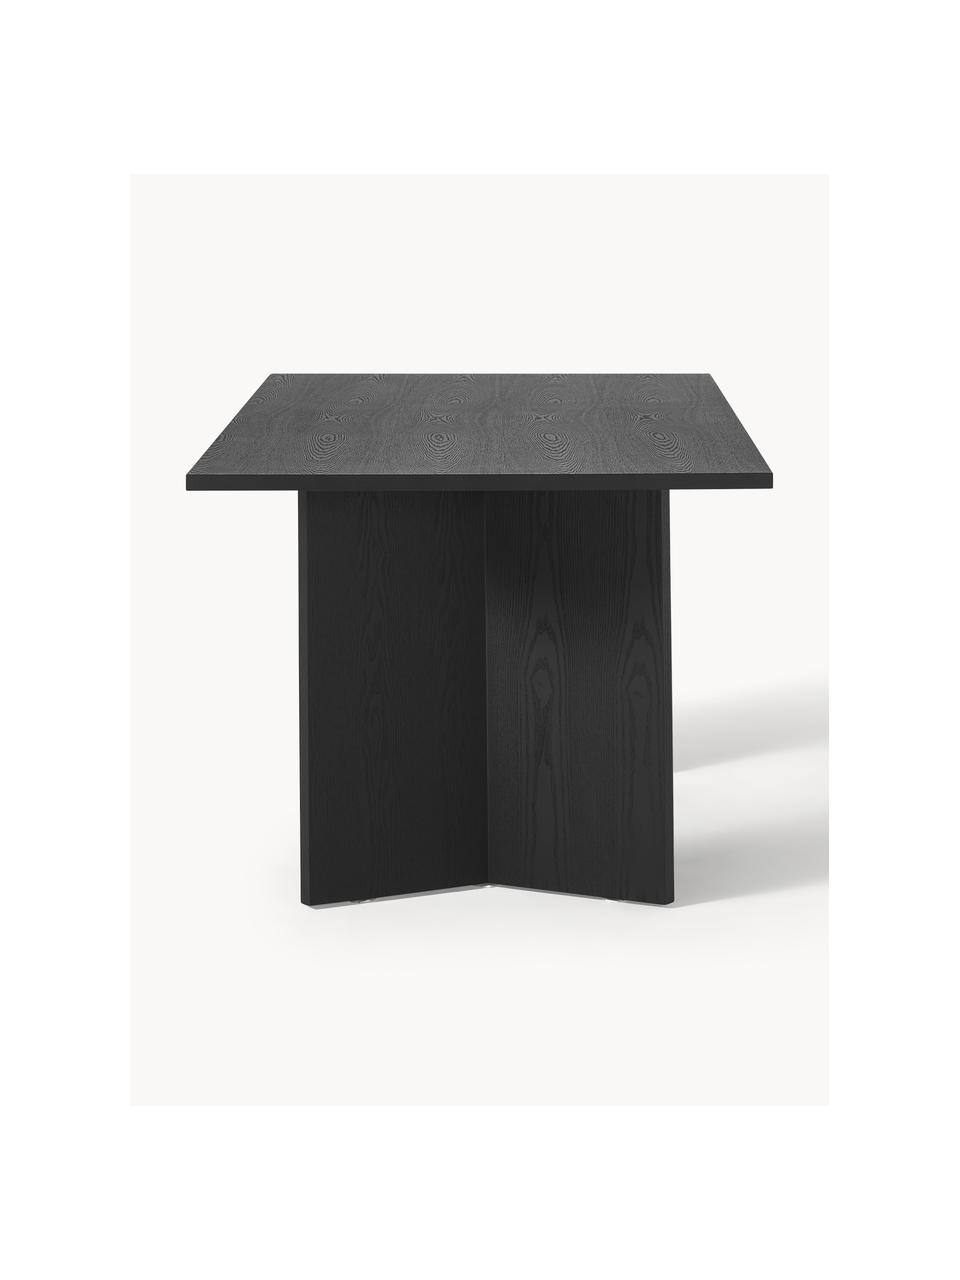 Jídelní stůl Toni, 200 x 90 cm, Lakovaná MDF deska (dřevovláknitá deska střední hustoty) s dubovou dýhou, Dřevo, černá, Š 200 cm, V 75 cm